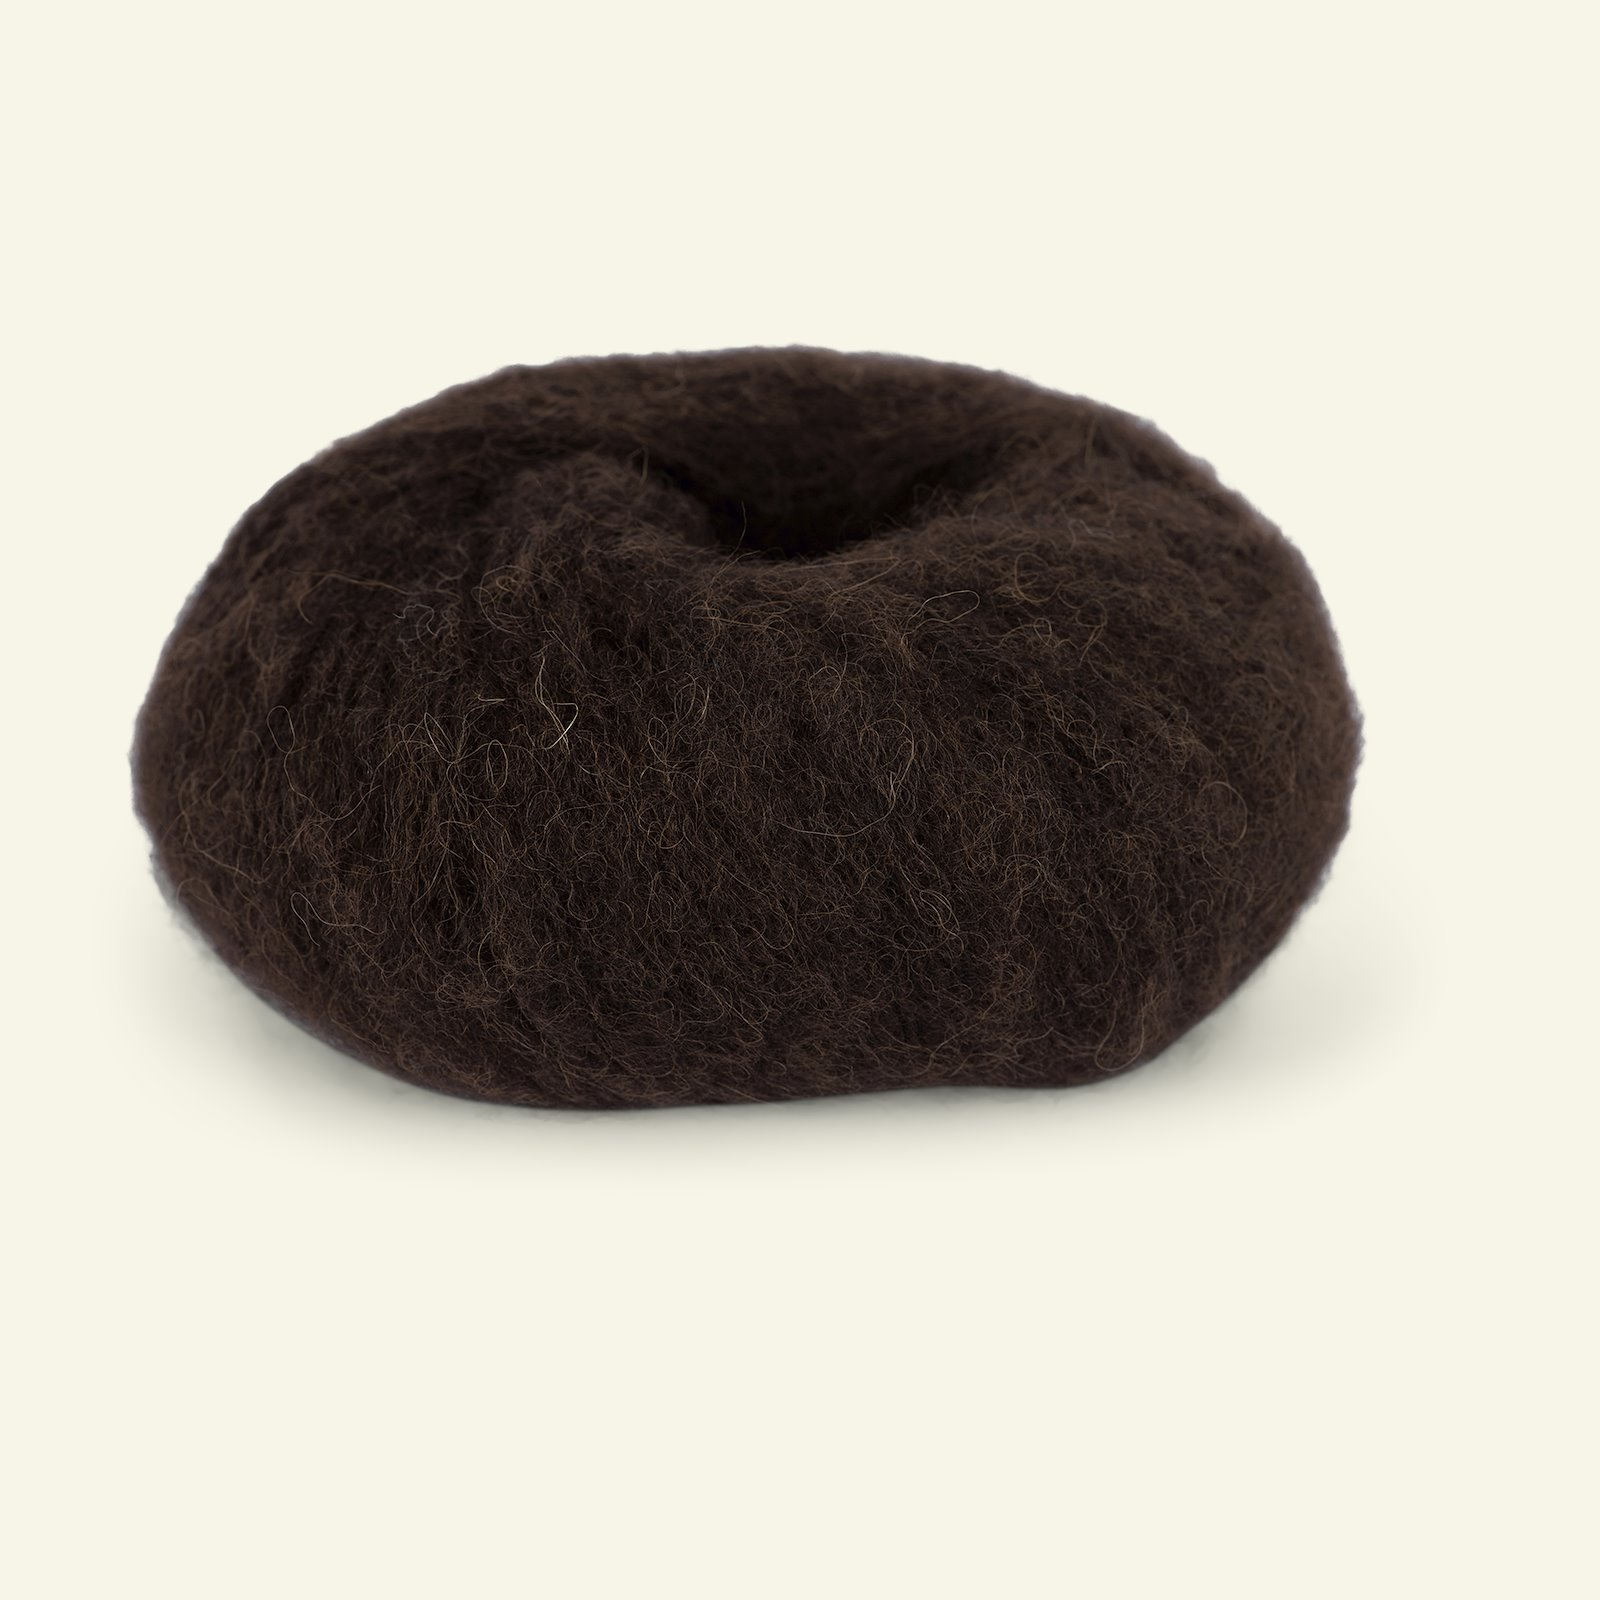 Du Store Alpakka, airy alpaca yarn "Faerytale", dark brown (722) 90000584_pack_b